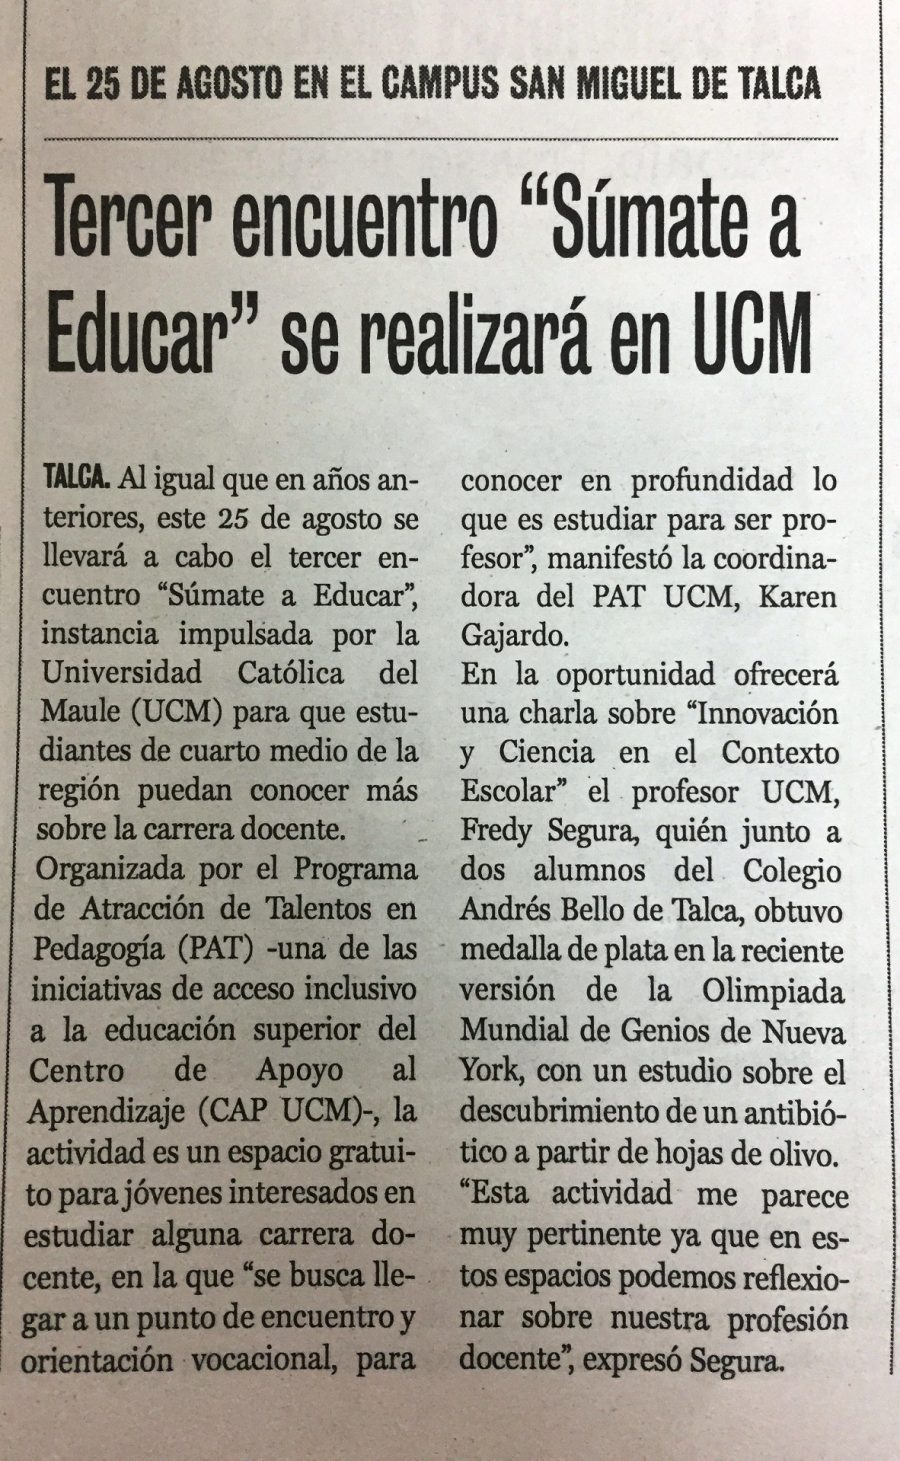 14 de agosto en Diario La Prensa: “Tercer encuentro “Súmate a Educar” se realizará en UCM”